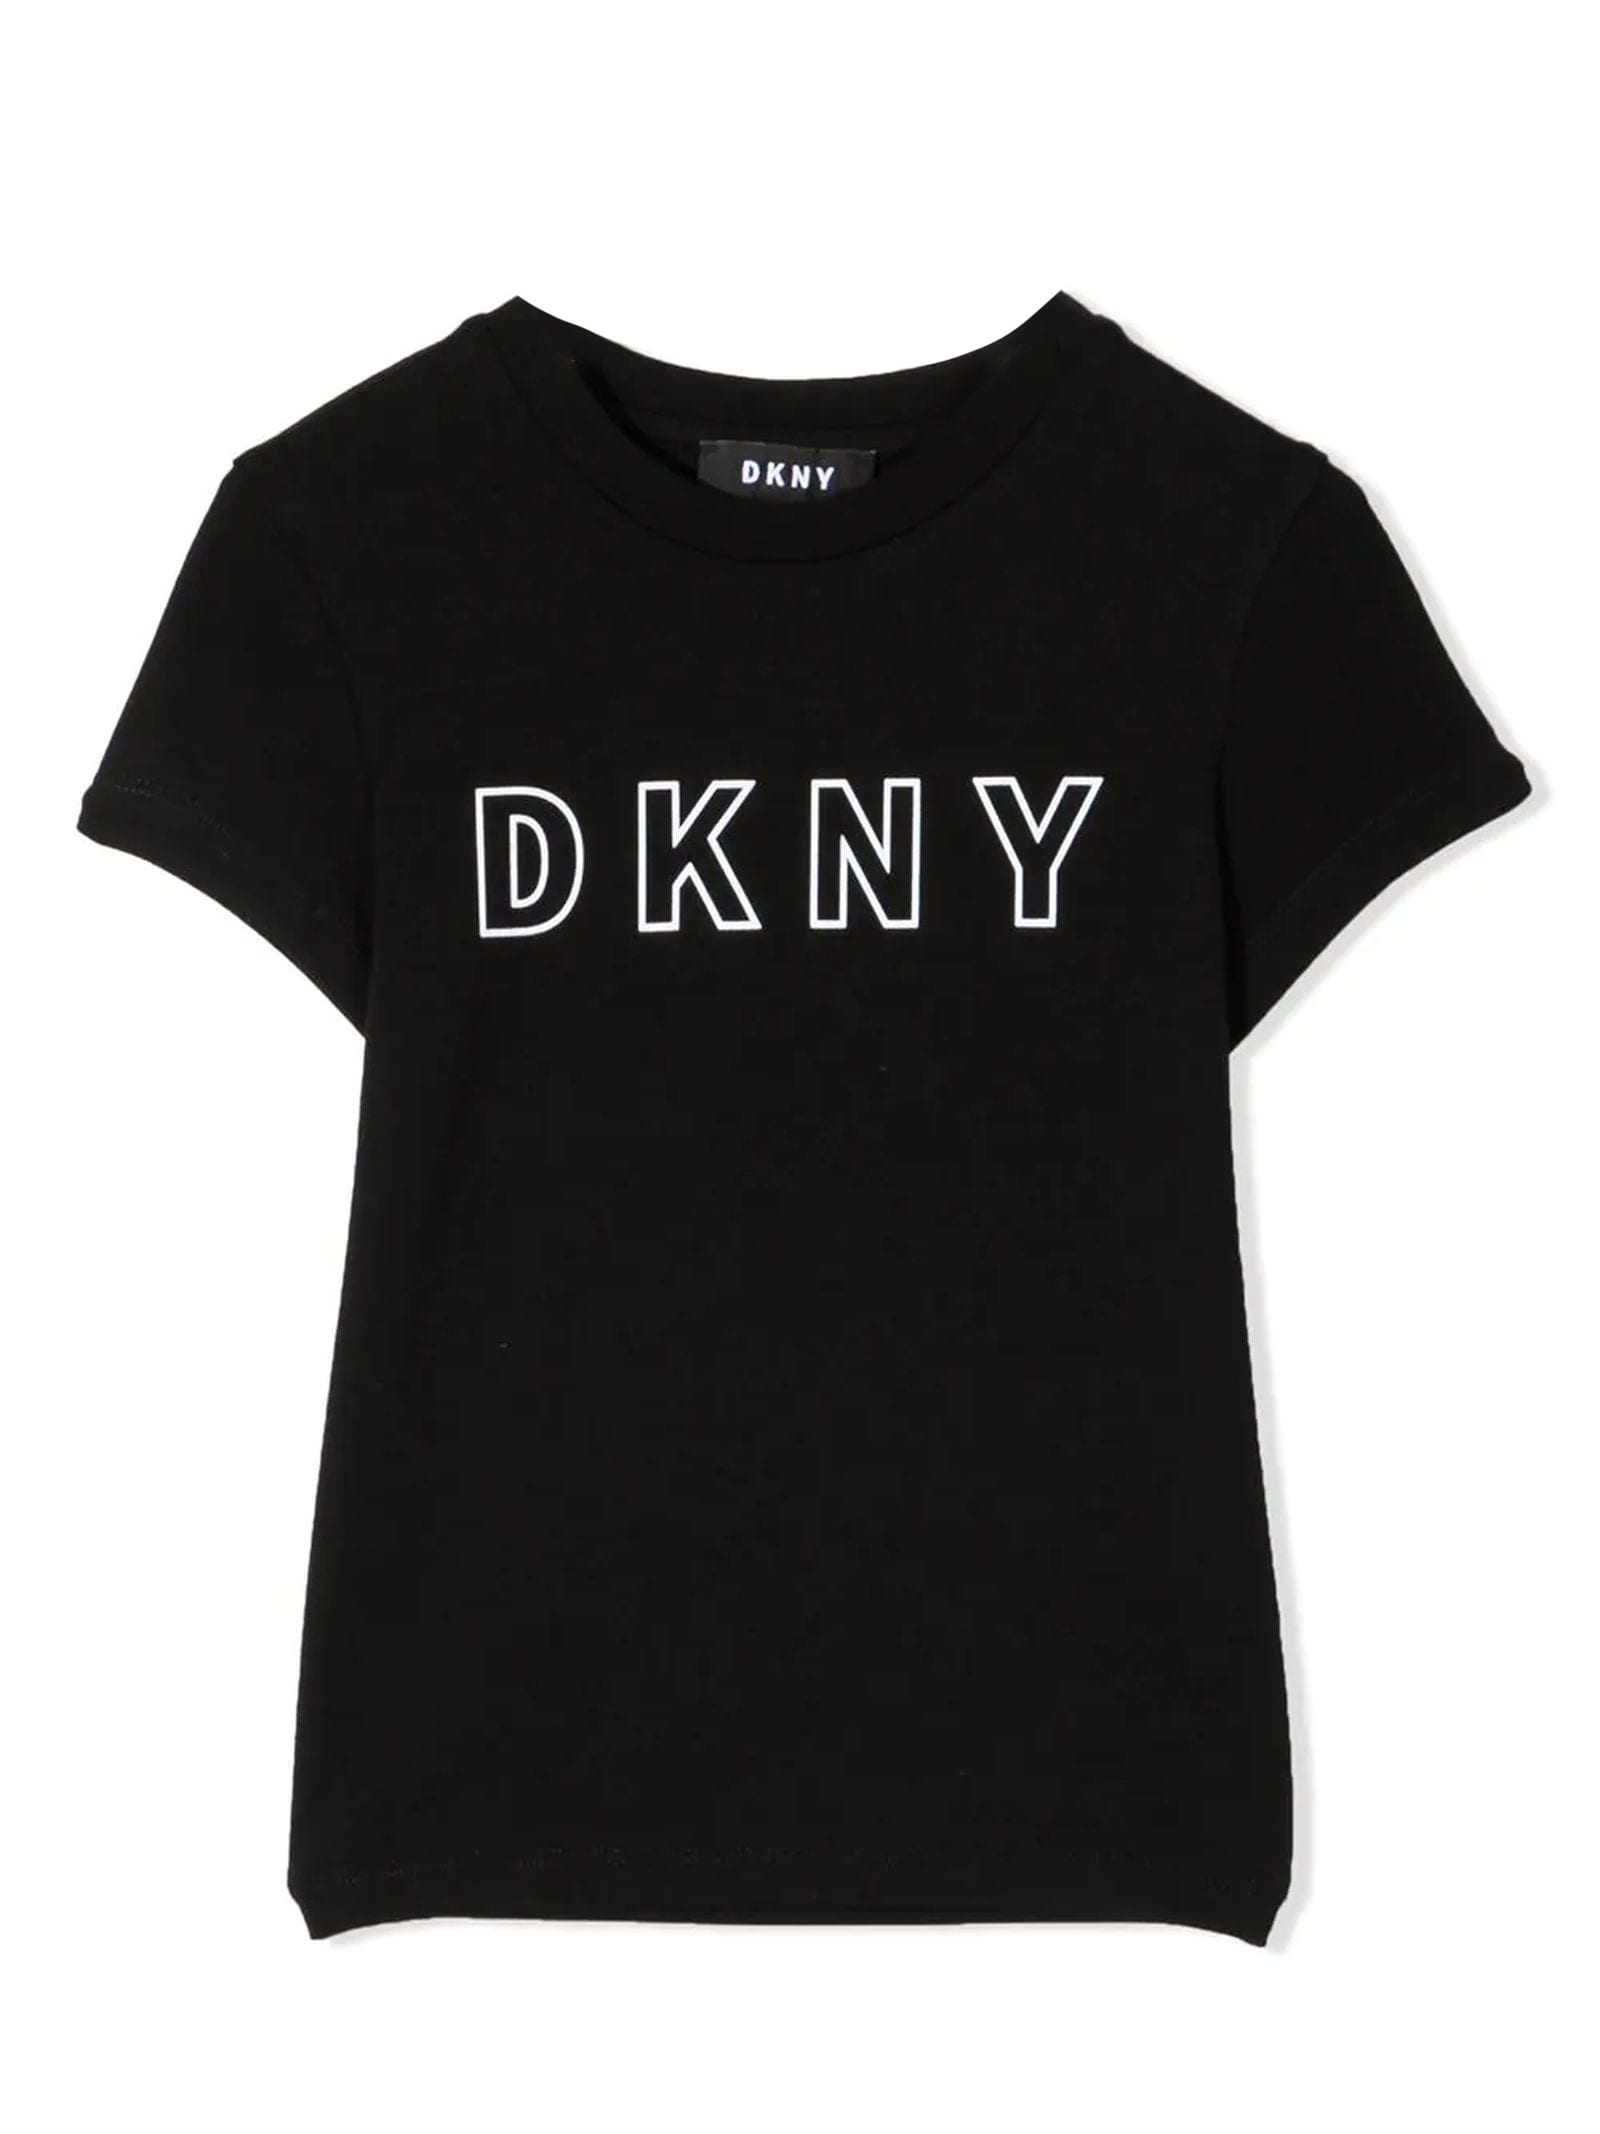 DKNY Black Cotton T-shirt